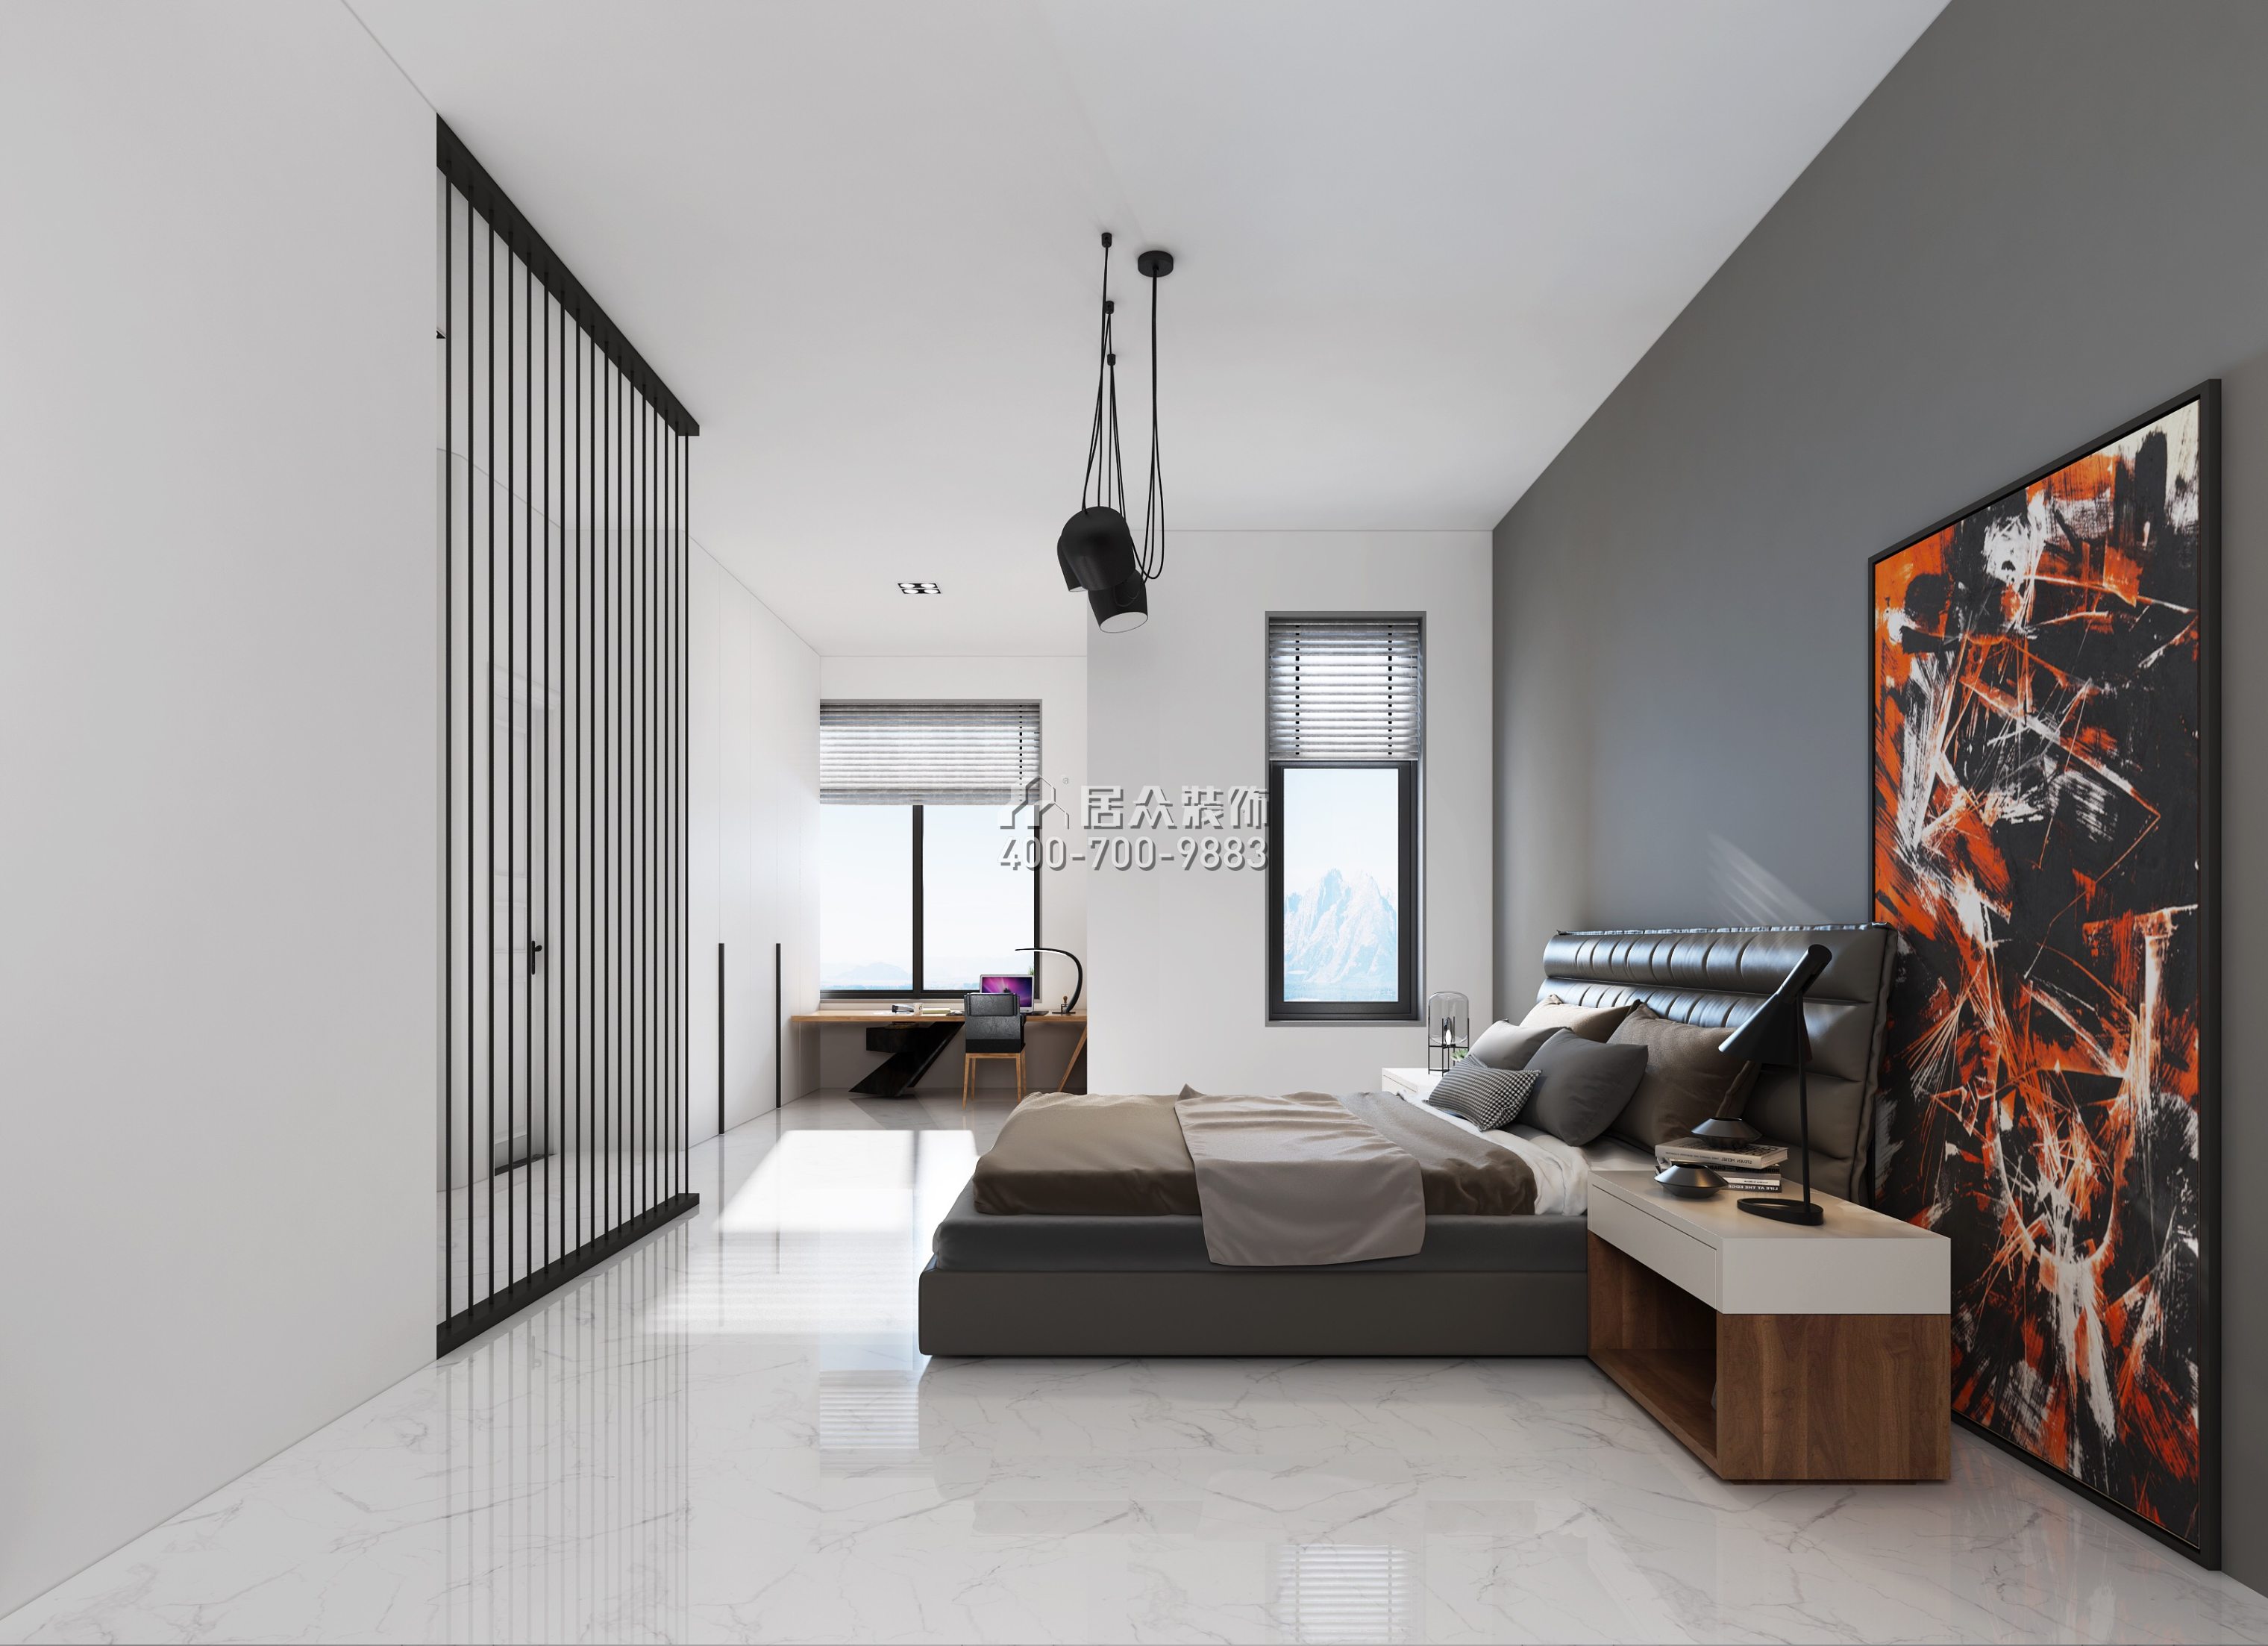 锦绣海湾城260平方米现代简约风格别墅户型卧室装修效果图